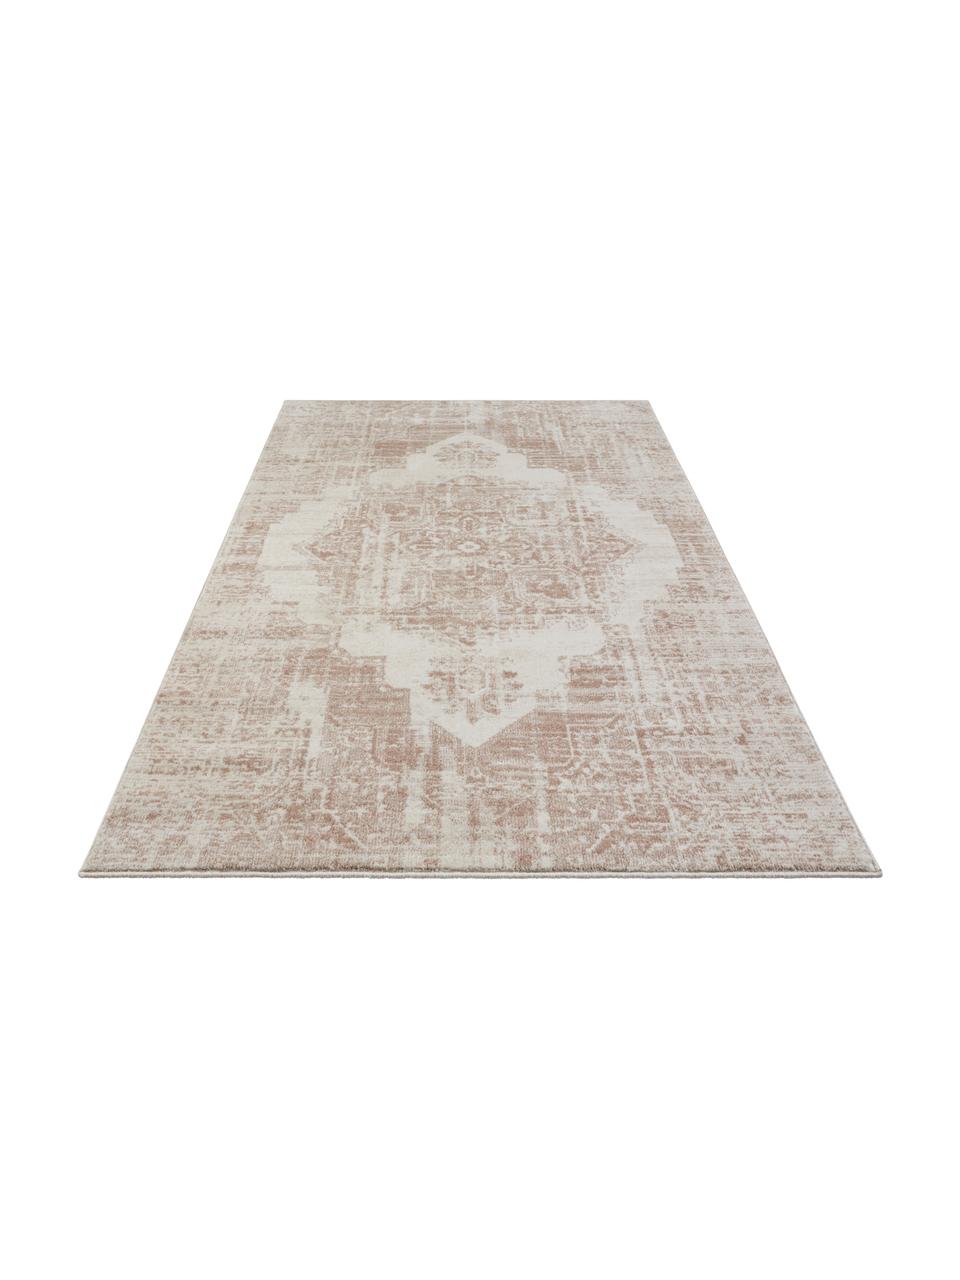 Teppich Garonne im Vintage Style, Flor: 100% Polypropylen, Kupferbraun, Beige, B 200 x L 290 cm (Größe L)